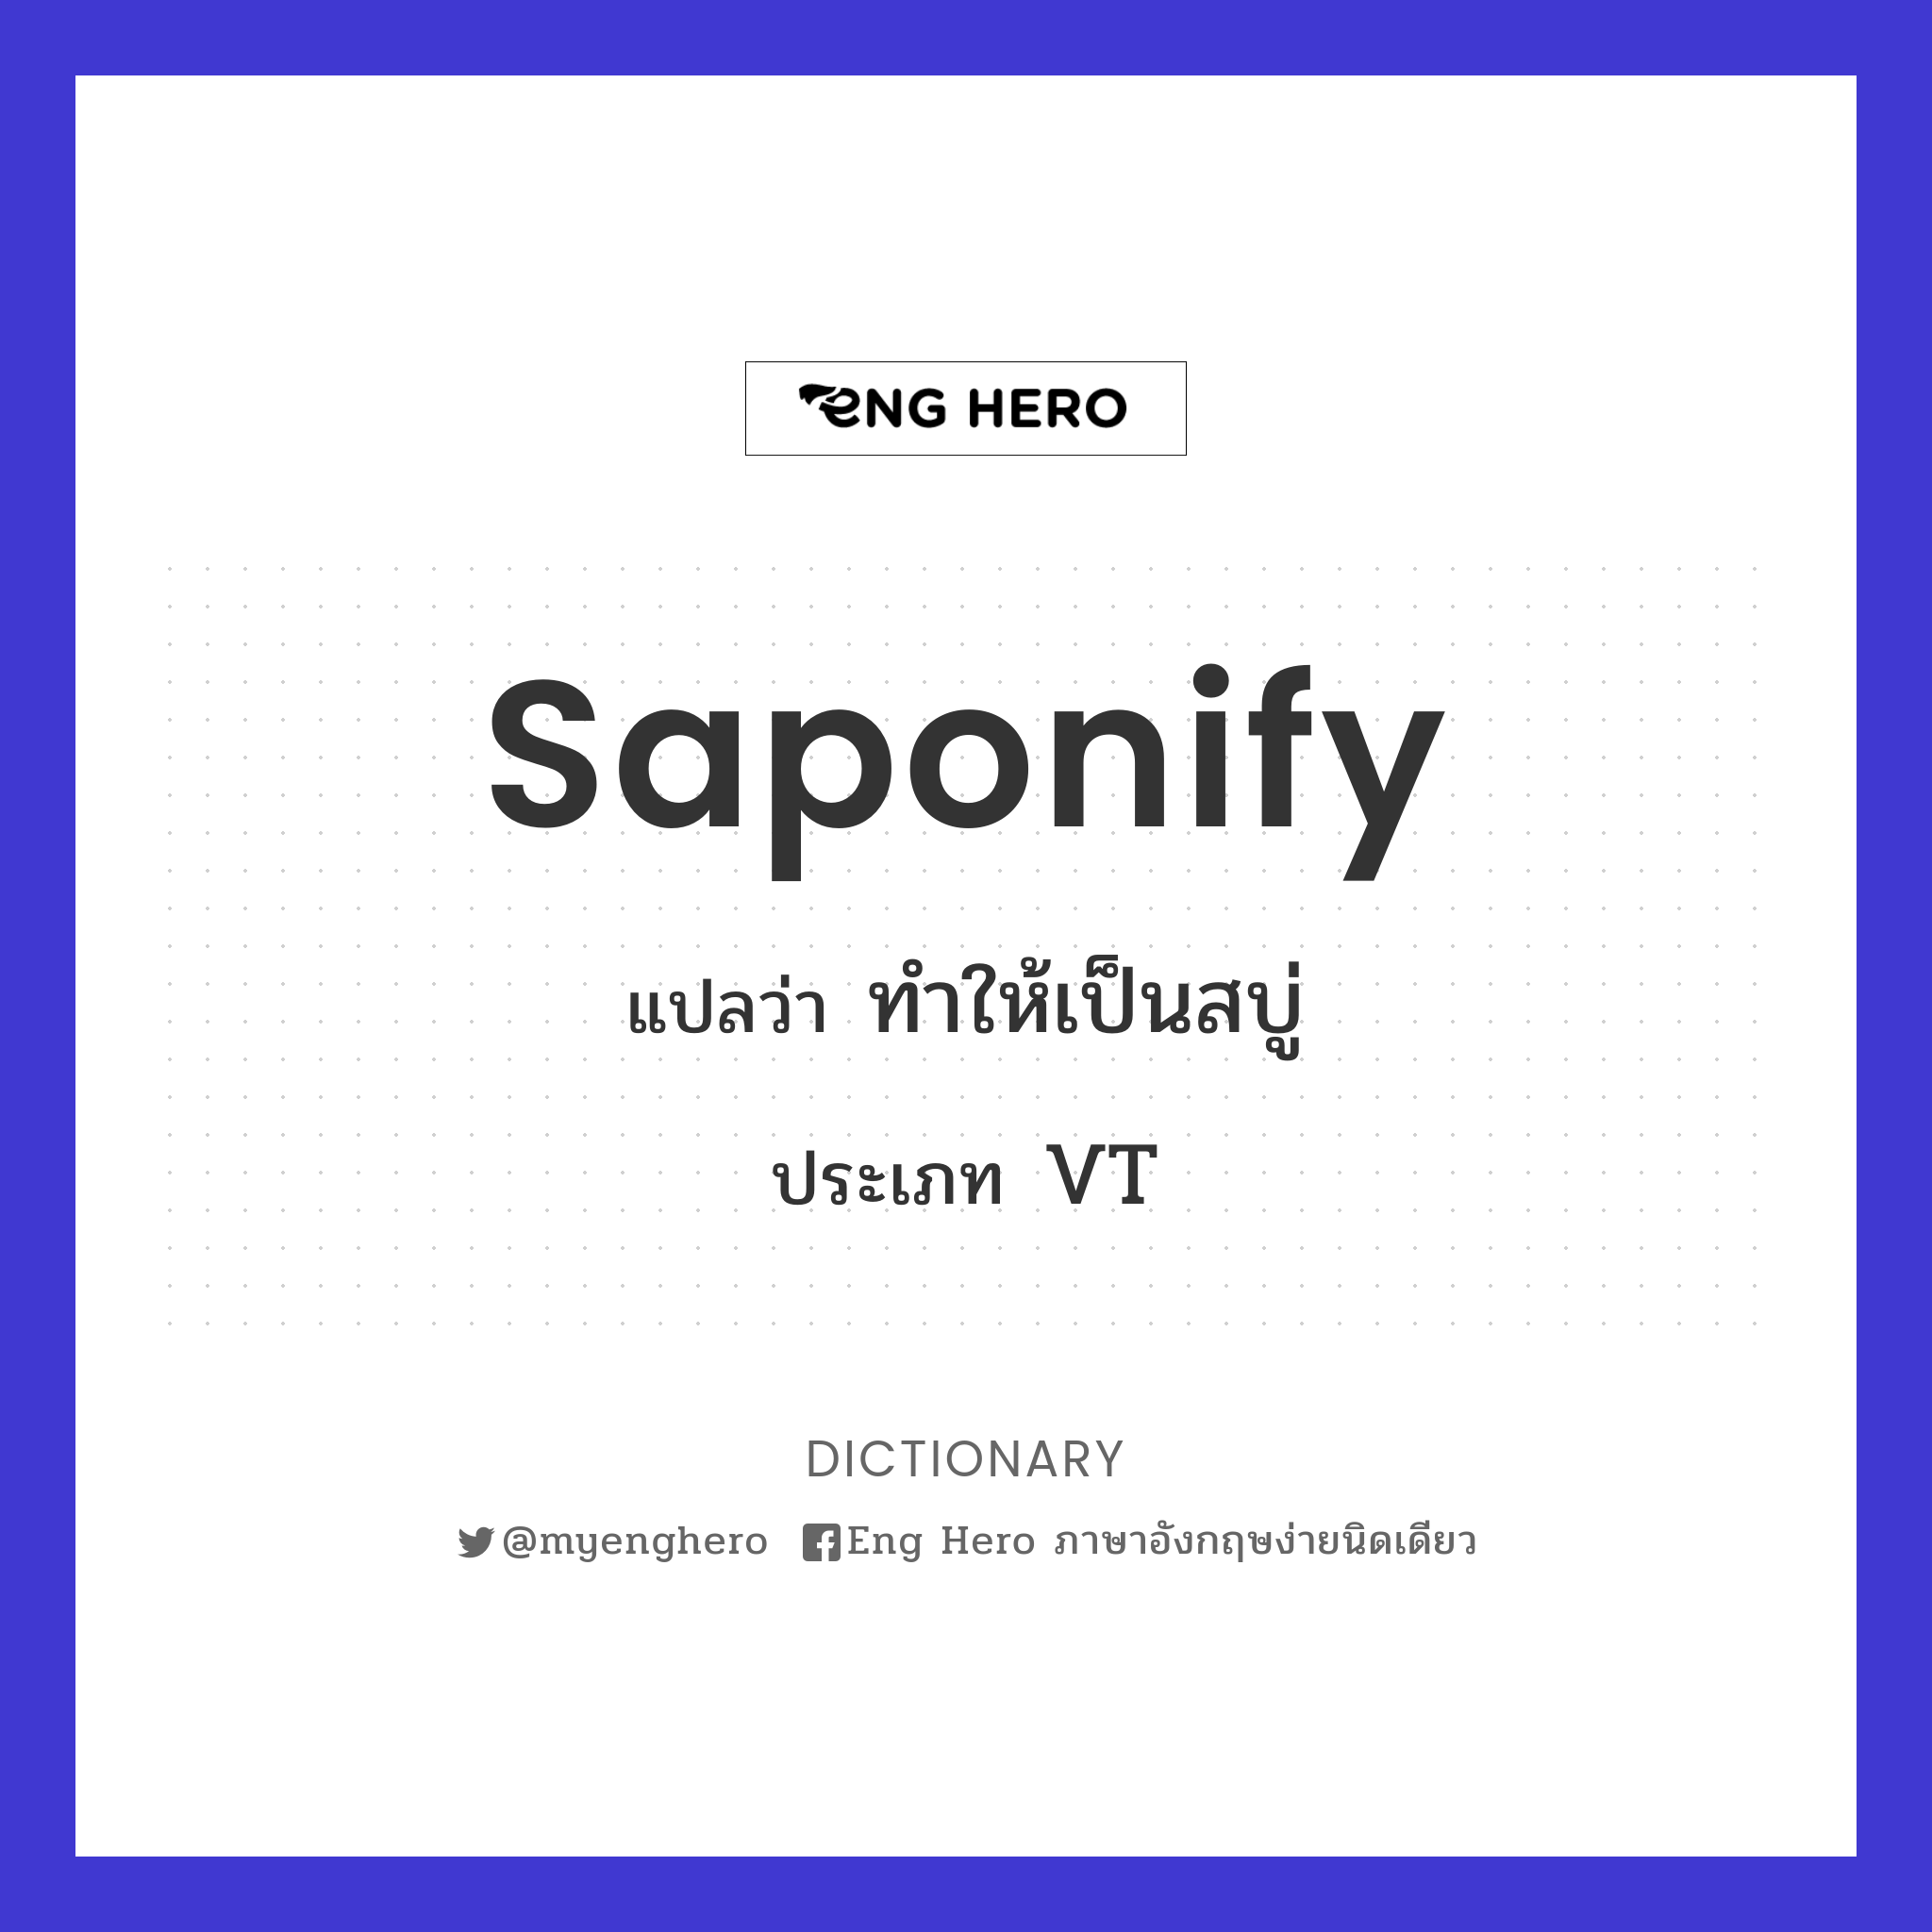 saponify